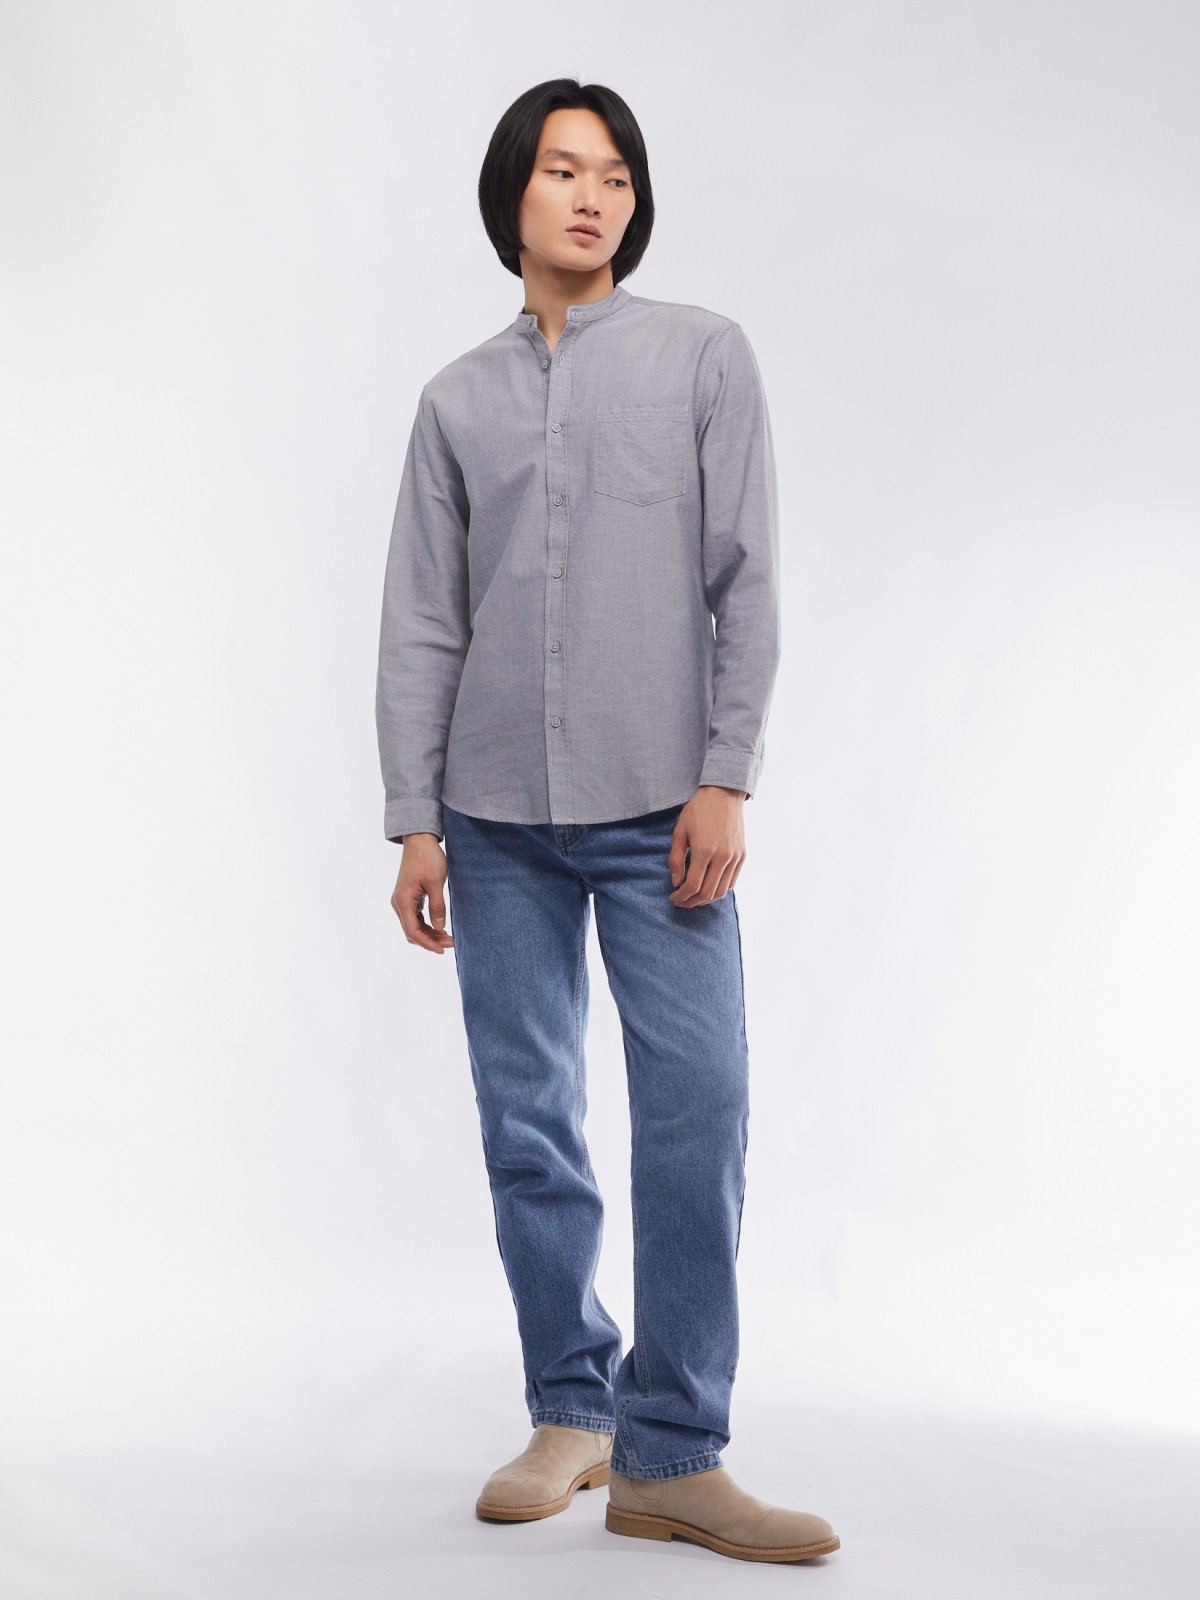 Офисная рубашка из хлопка с воротником-стойкой и длинным рукавом zolla 014122159033, цвет серый, размер M - фото 2